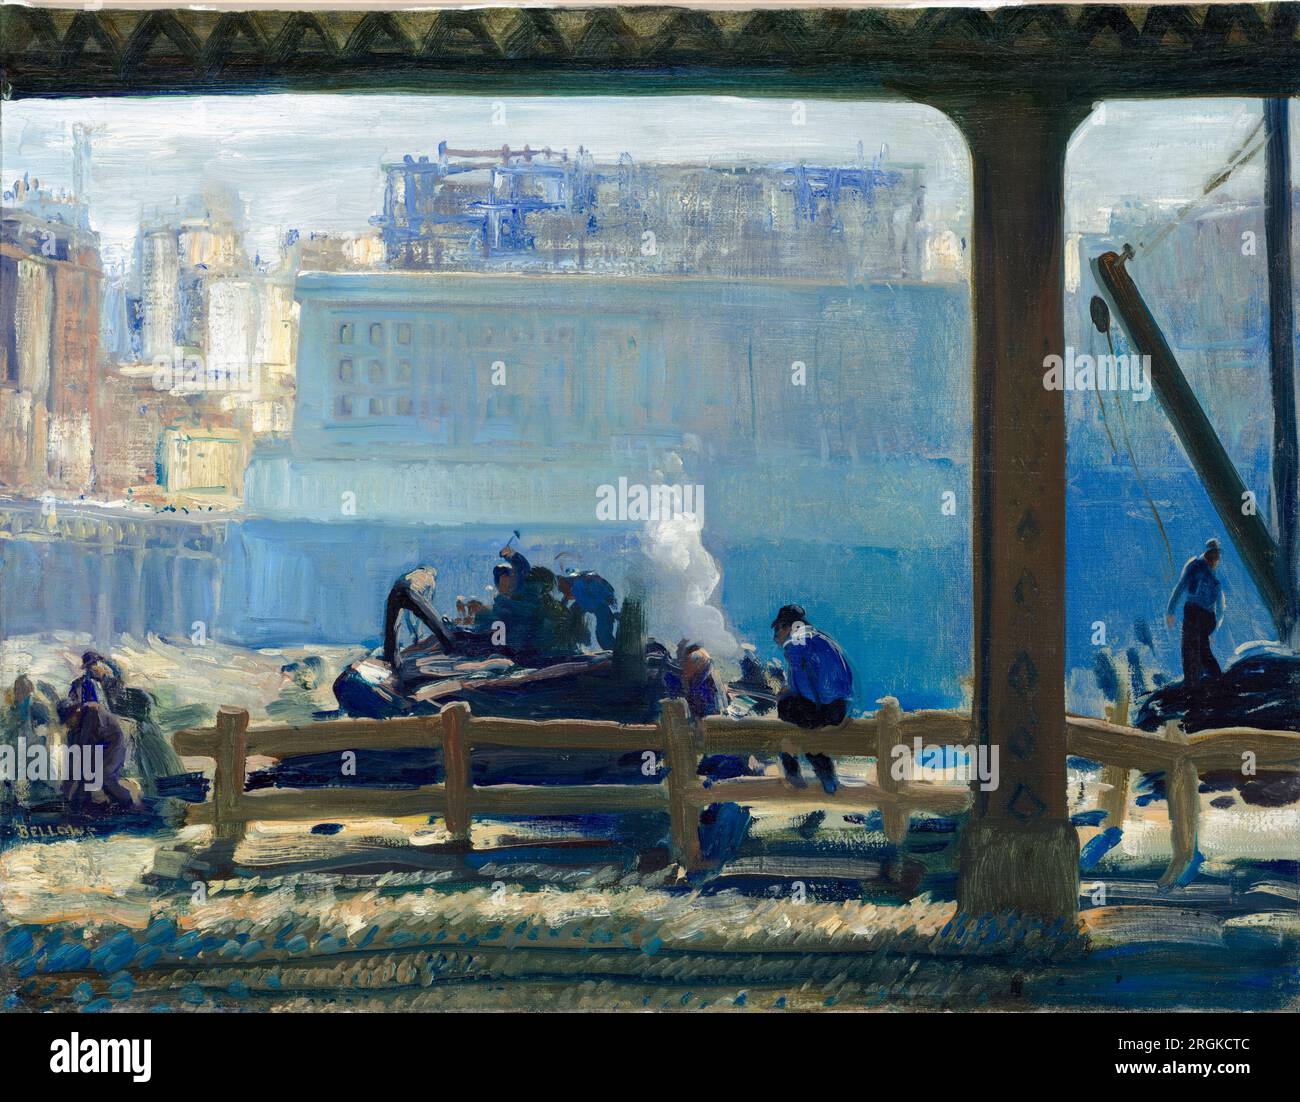 George Bellows, Blue Morning, peinture à l'huile sur toile, 1909 Banque D'Images